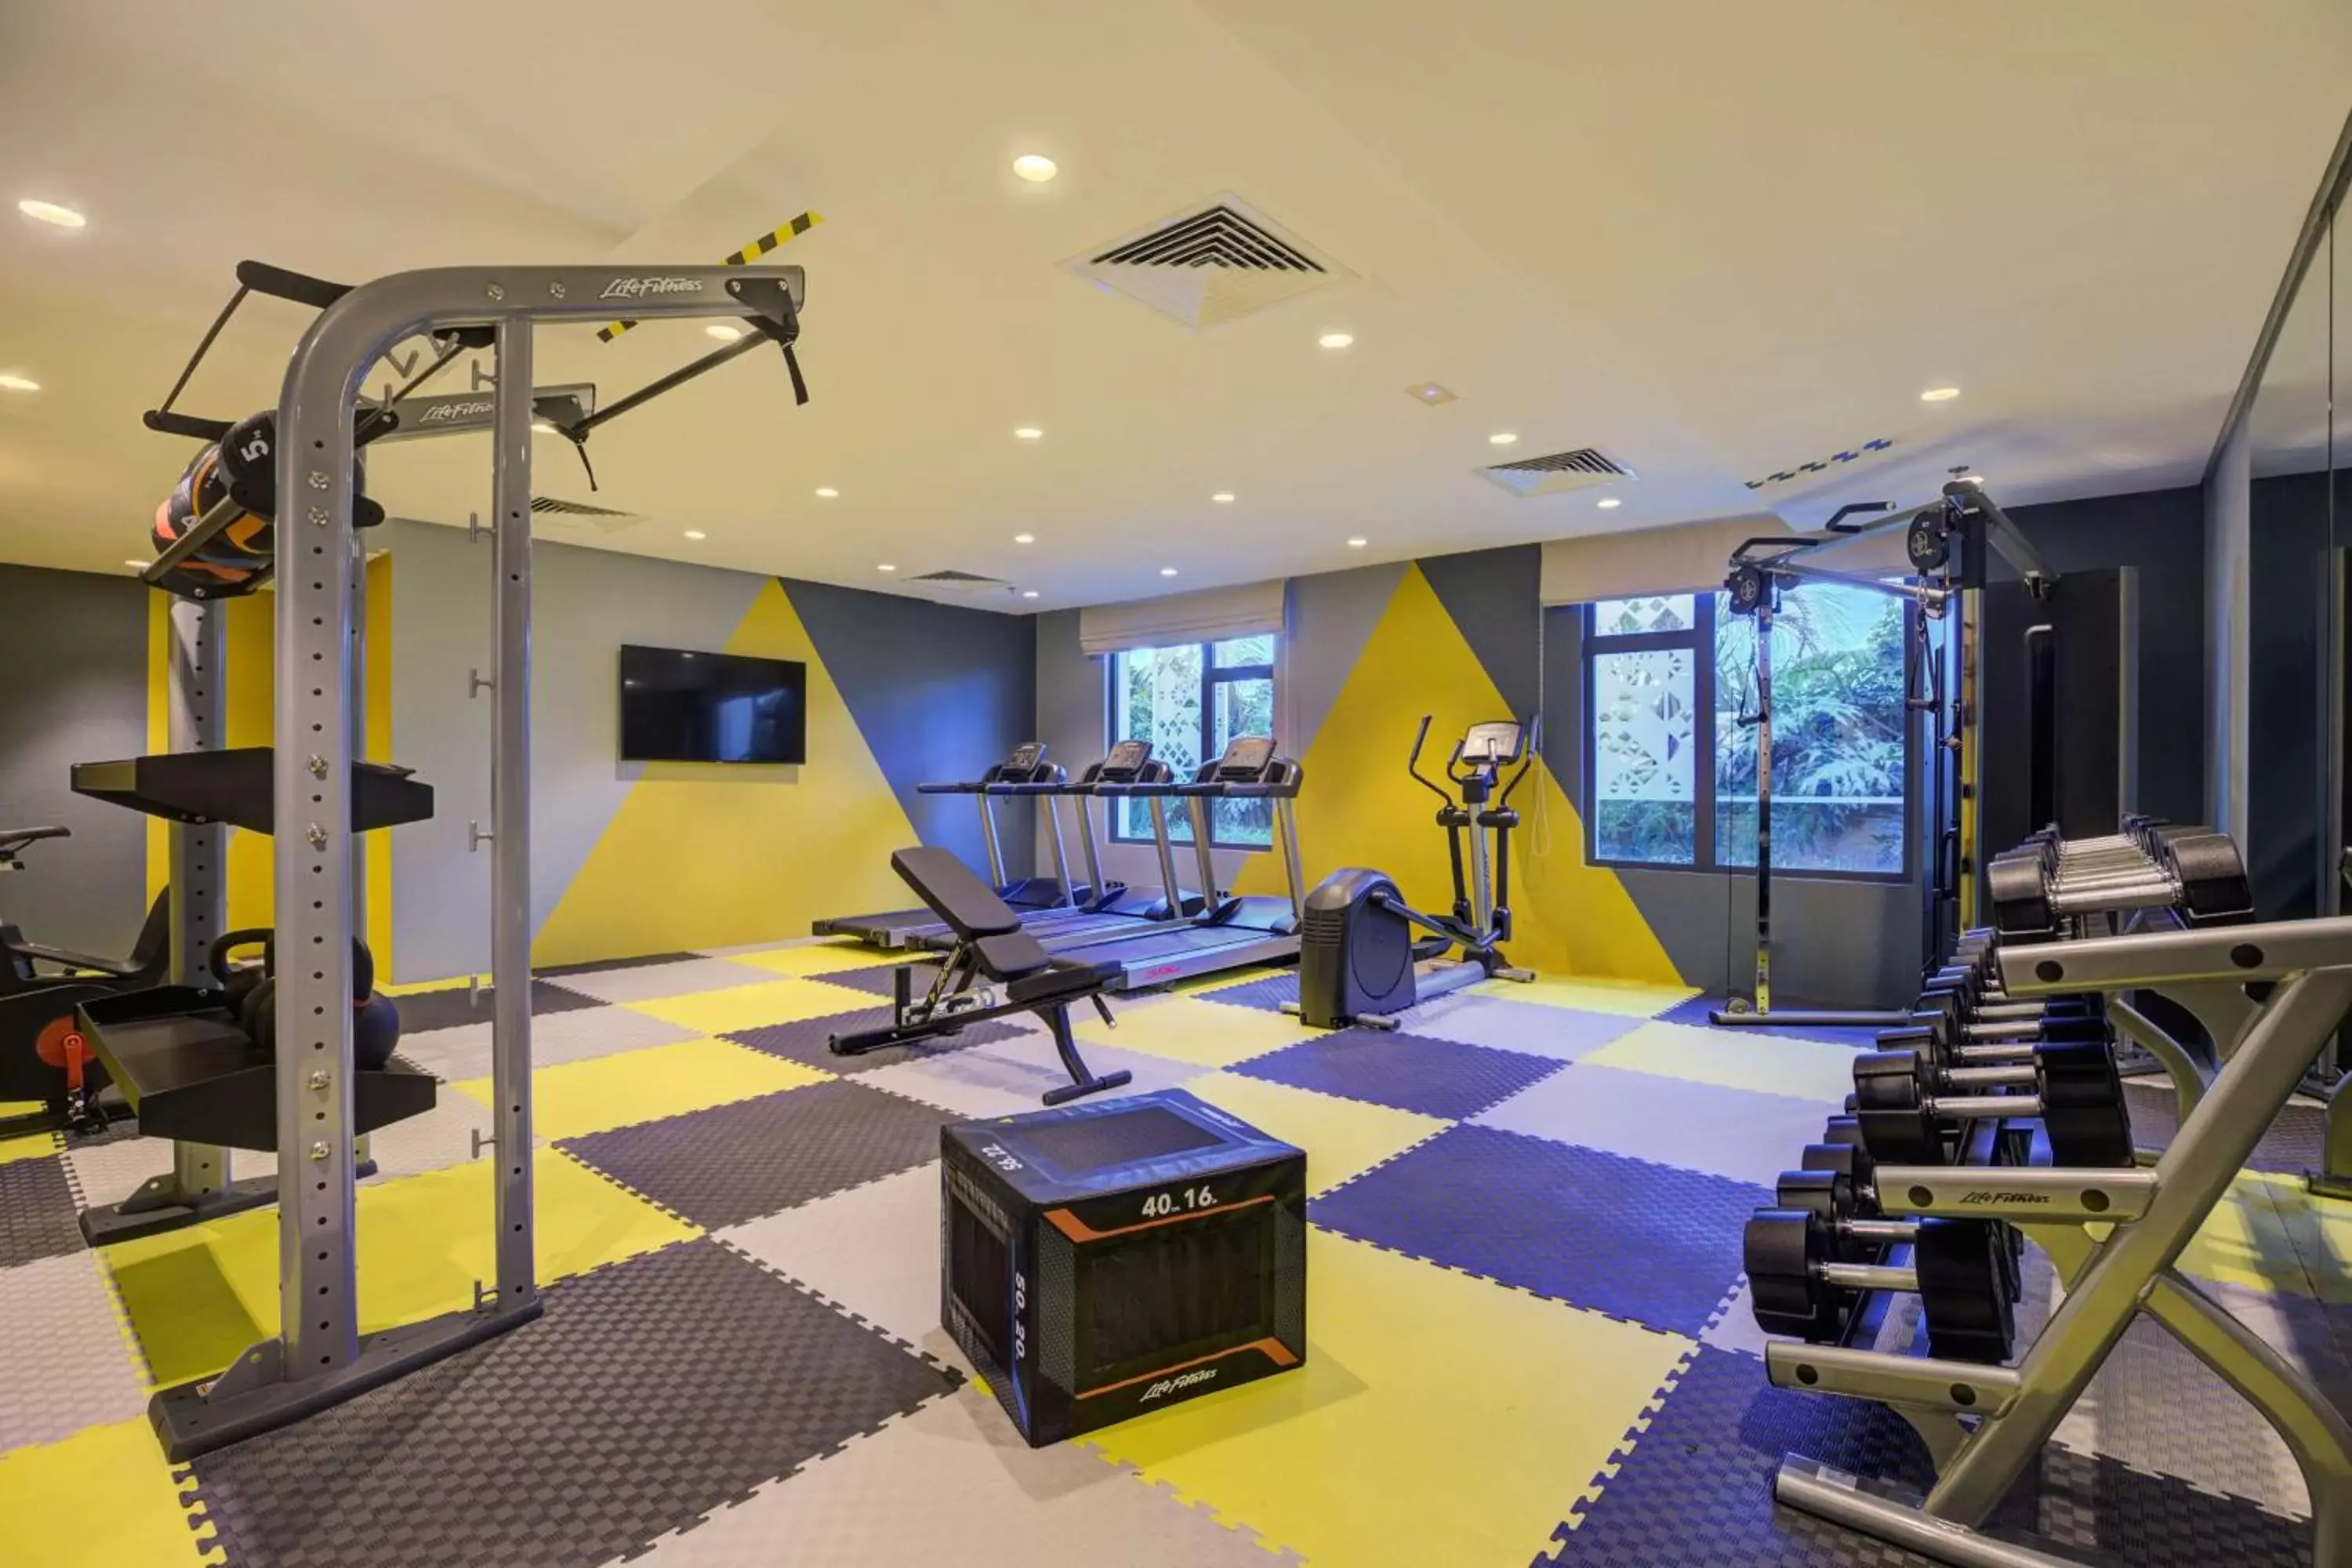 Fitness centre/facilities, Fitness Center/Facilities in Hilton Garden Inn Casablanca Sud